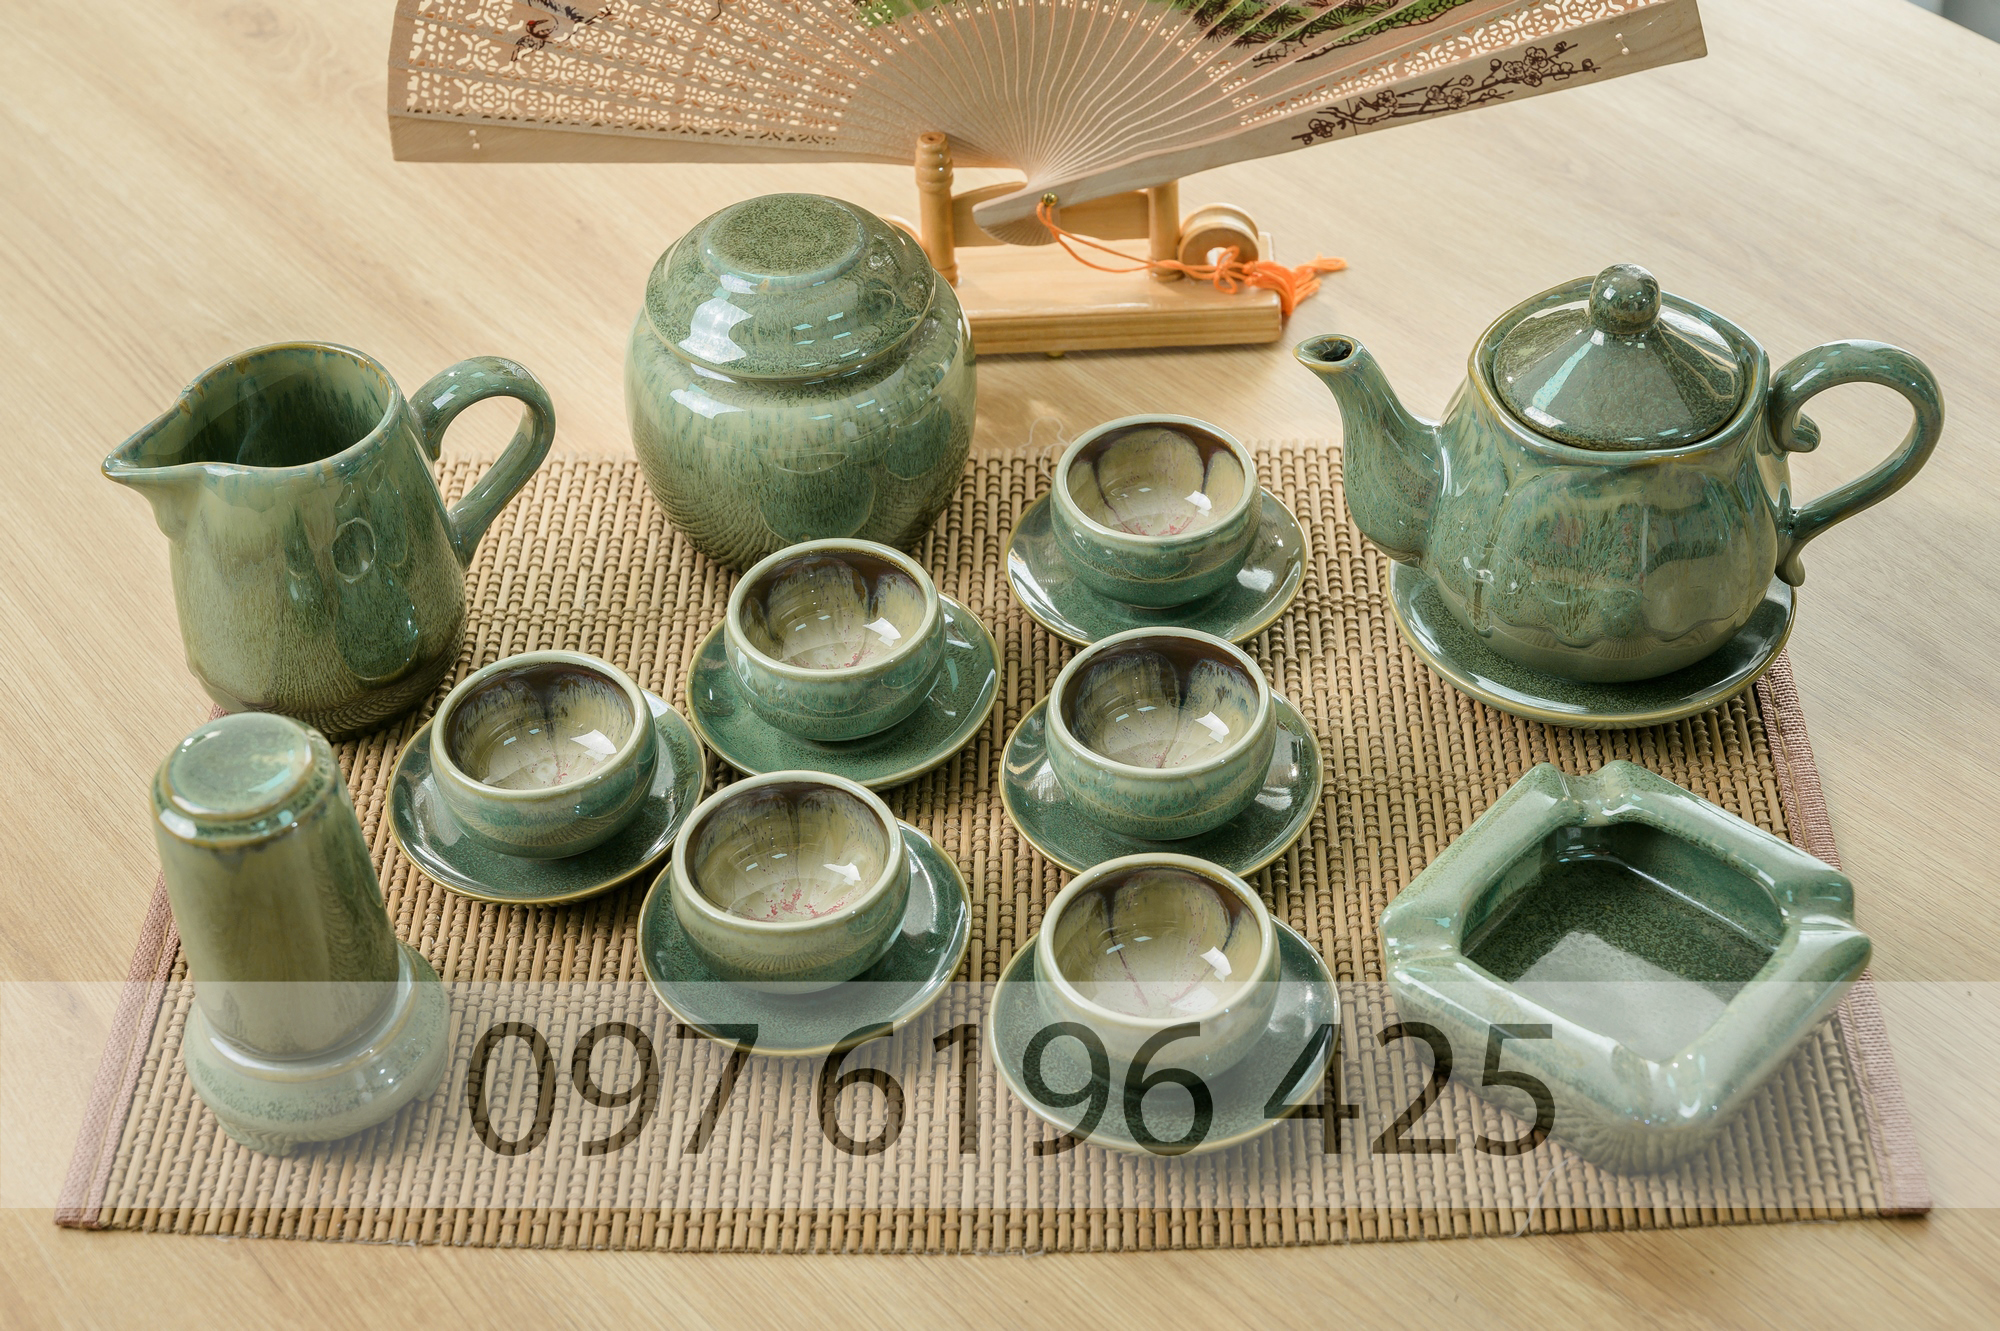 Bộ ấm trà Bát Tràng men hỏa biến xanh ngọc hoa trong lòng chén kèm phụ kiện